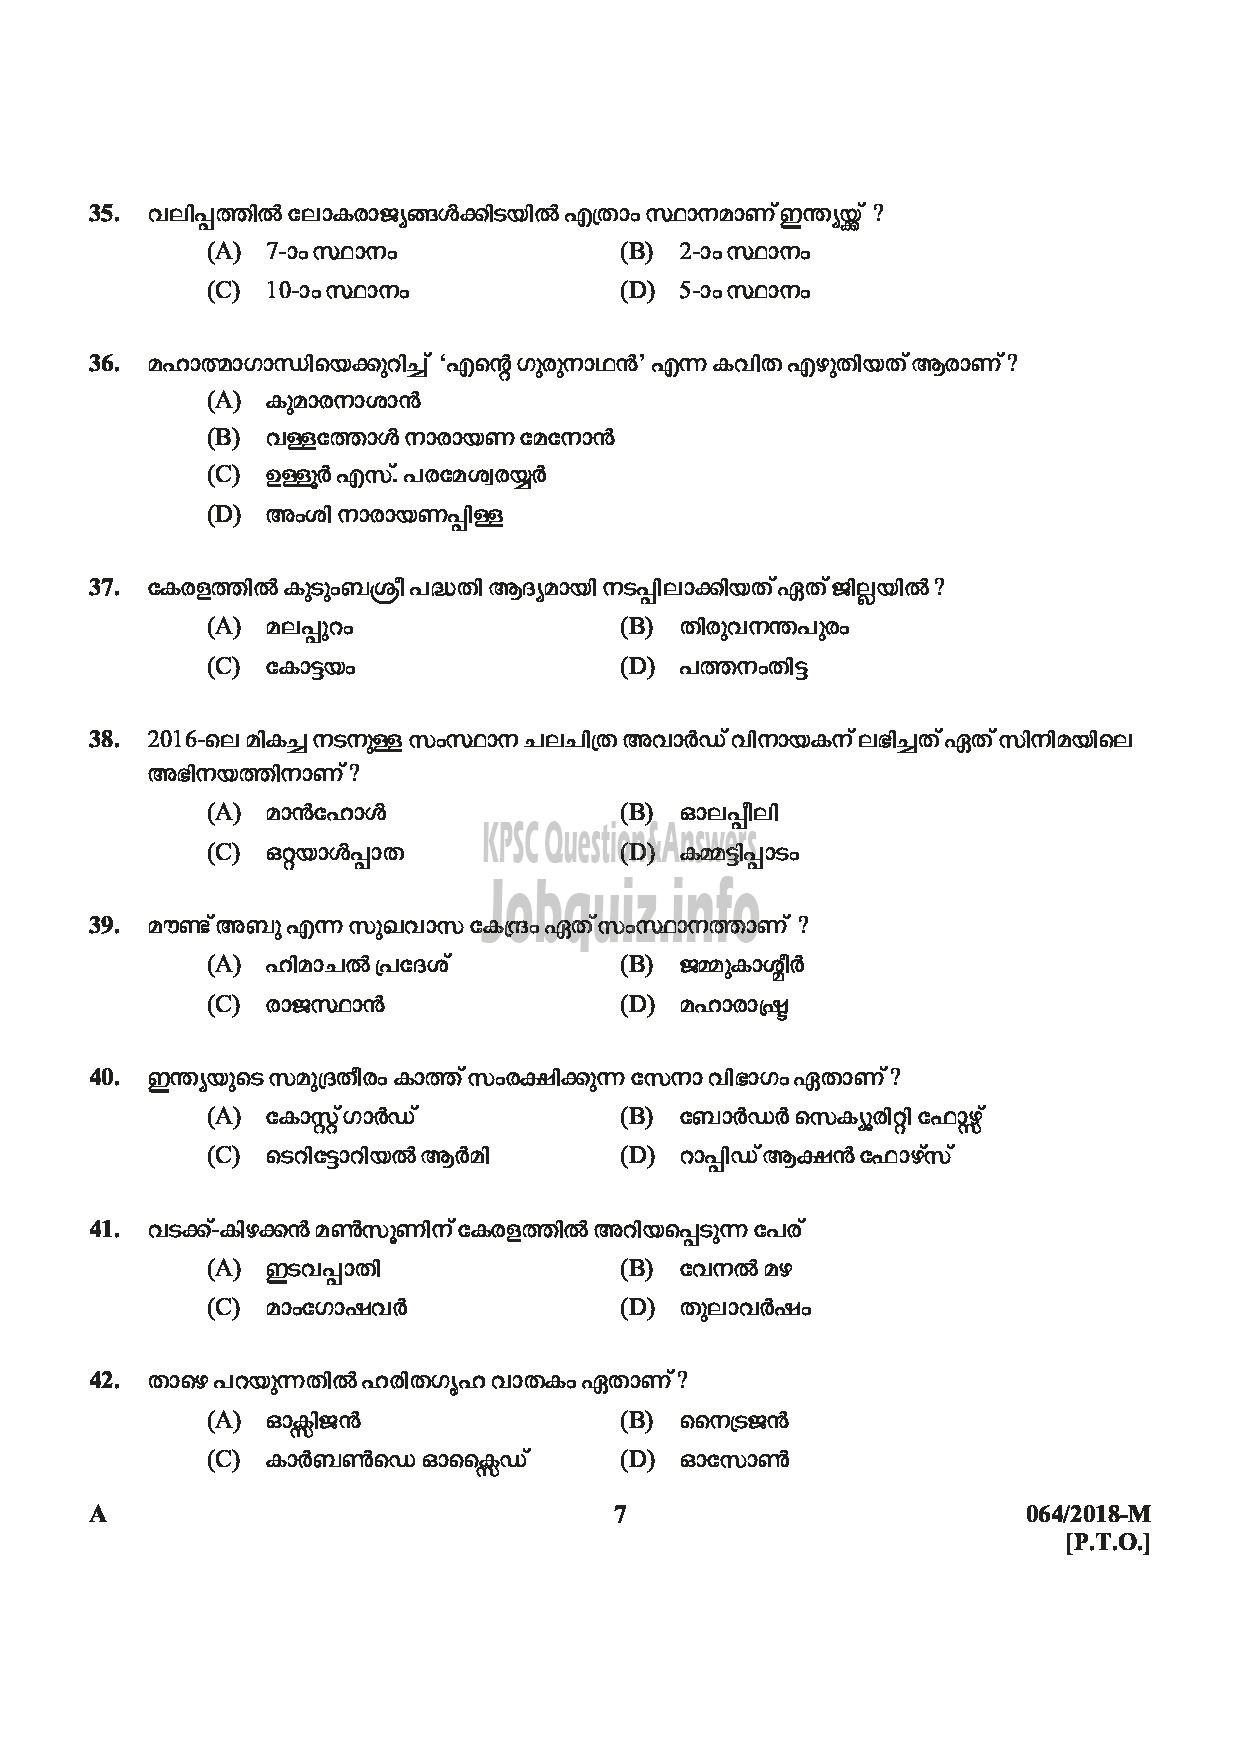 Kerala PSC Question Paper - LAST GRADE SERVANTS EXSERVICEMAN NCC SAINIK WELFARE-7